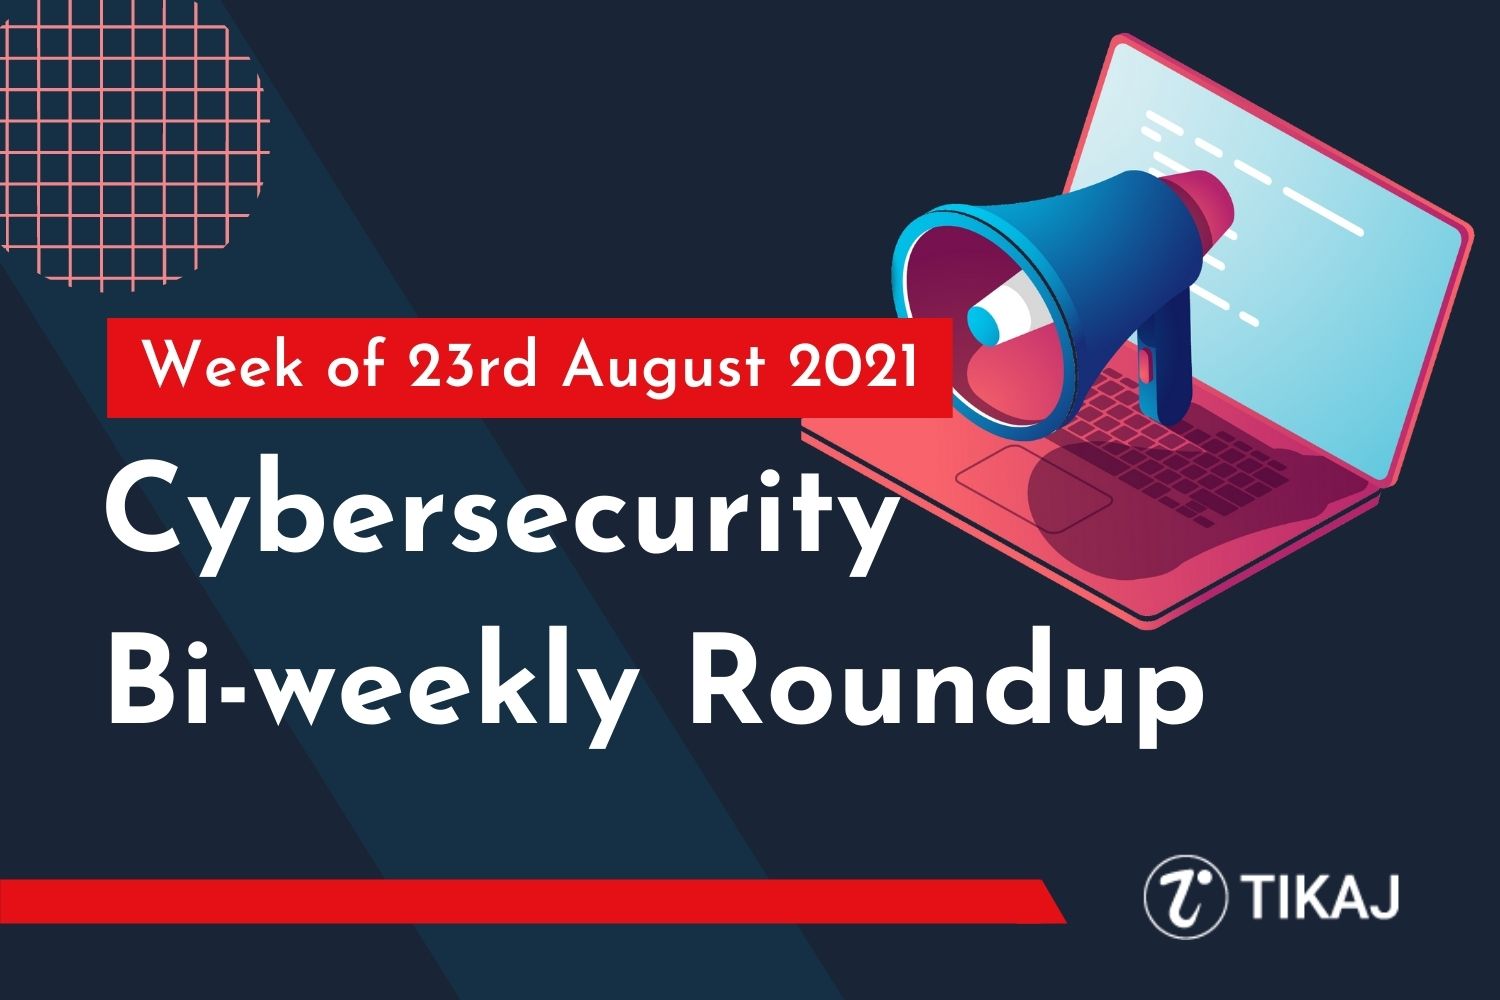 Cybersecurity Bi-weekly Roundup: Week of 23rd August 2021